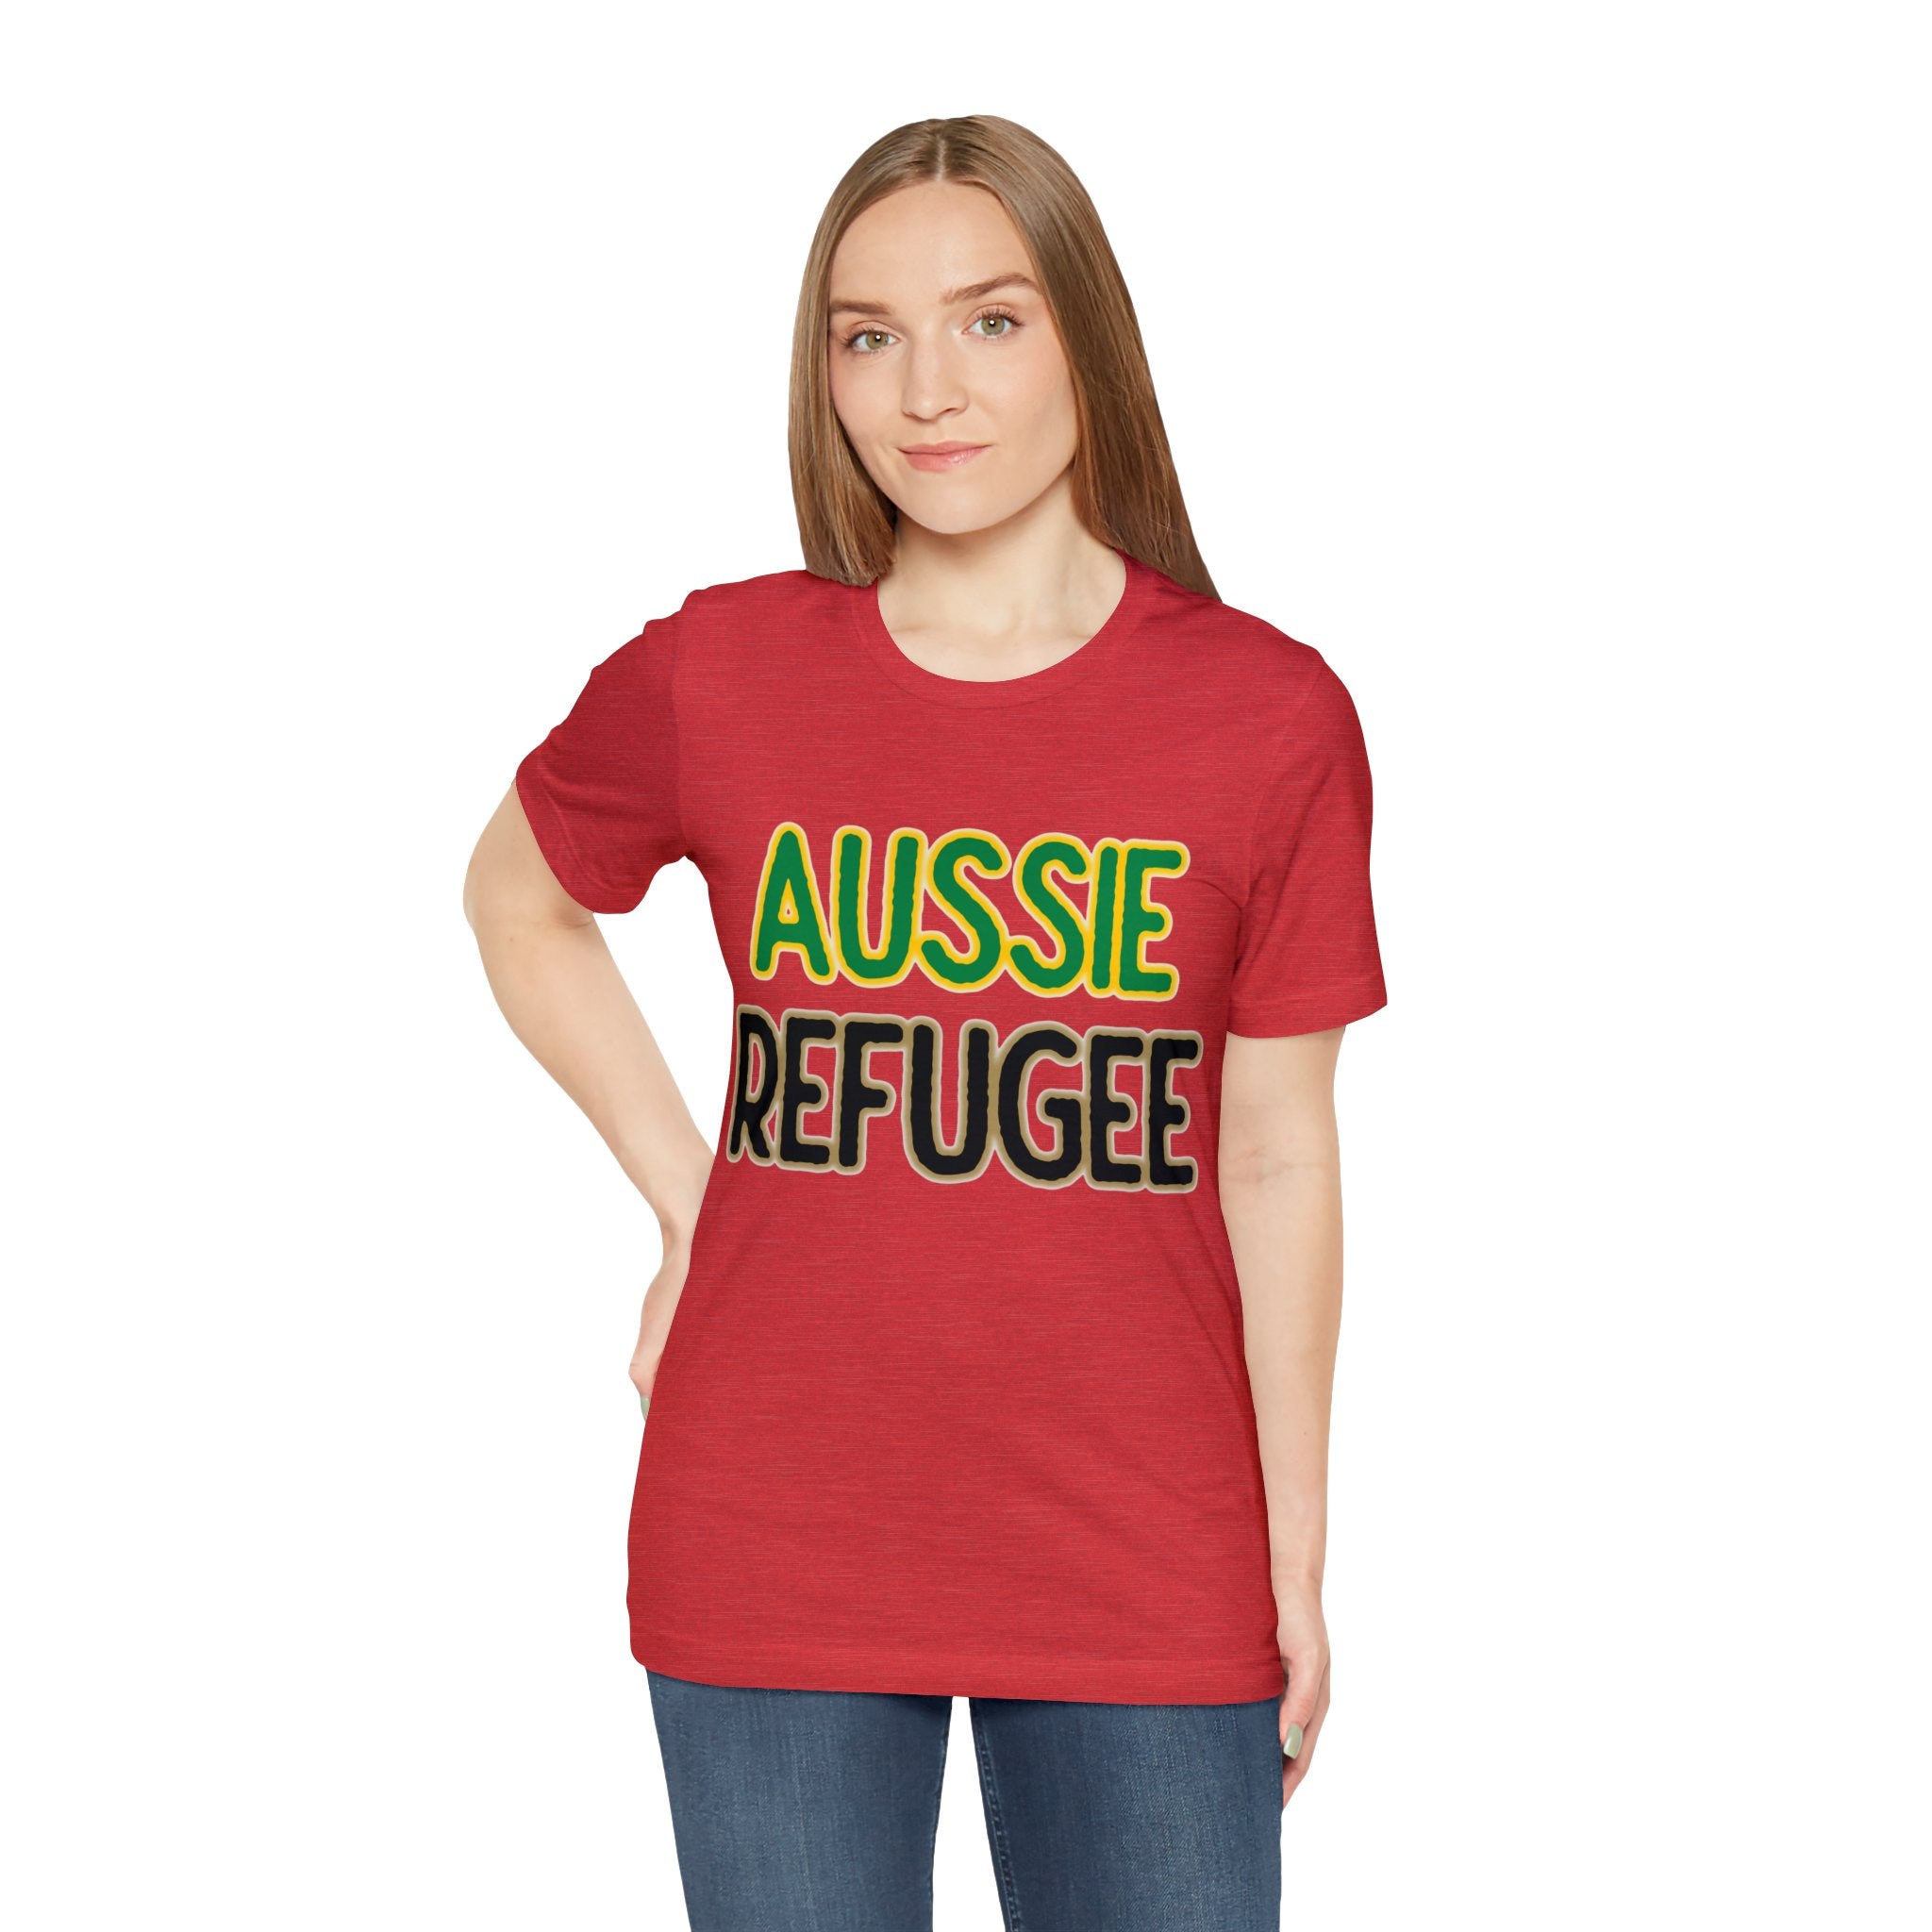 Aussie Refugee Tee